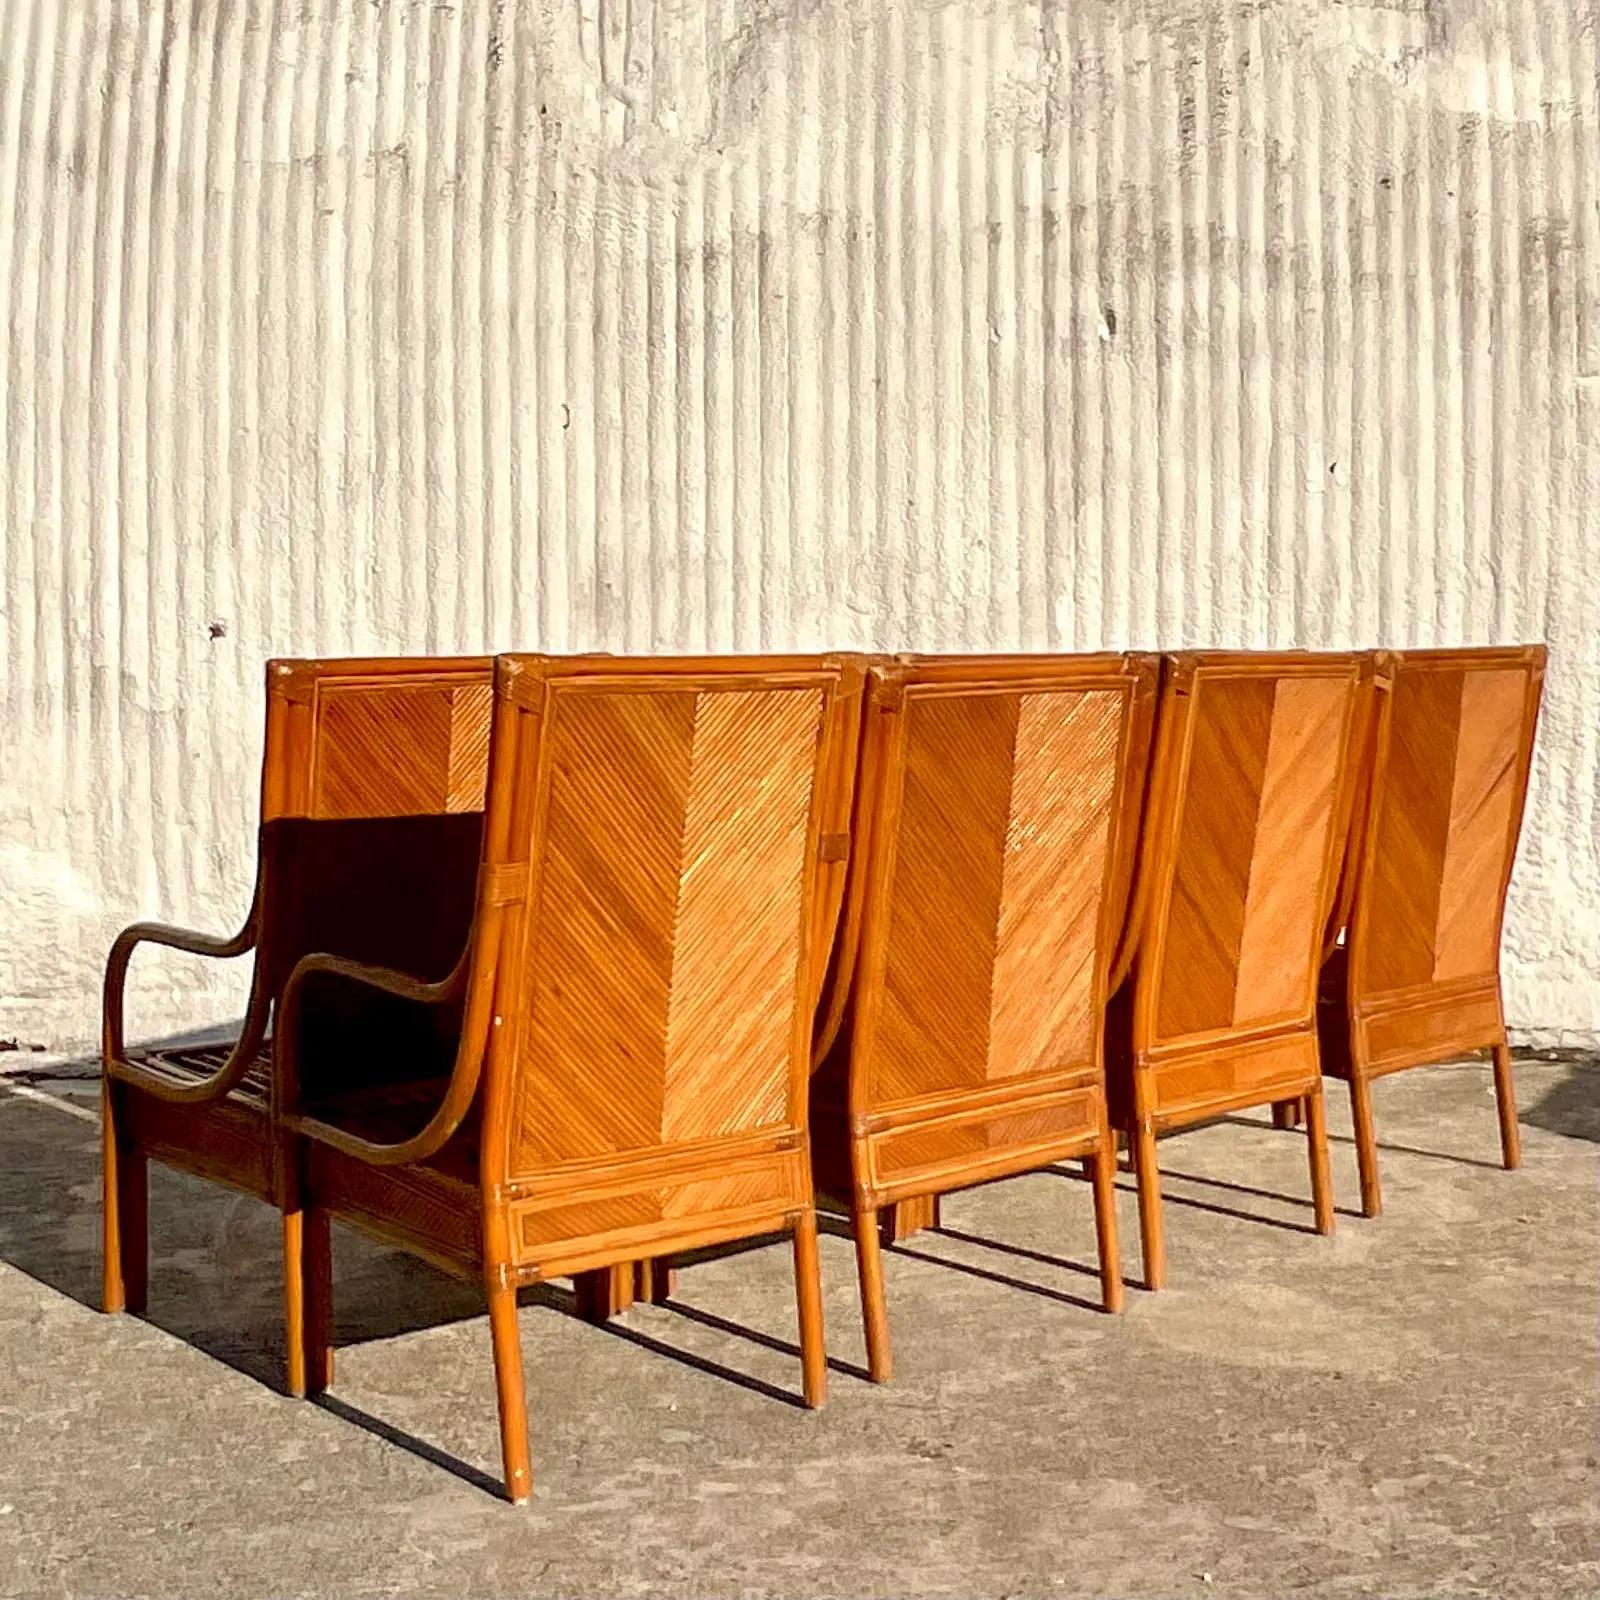 Ein fantastischer Satz von 8 Vintage Coastal Esszimmerstühlen. Unglaublicher Rahmen aus Bleistiftschilf in schickem Chevron-Design. Zwei Sessel und sechs Beistelltische. Erworben aus einem Nachlass in Palm Beach.